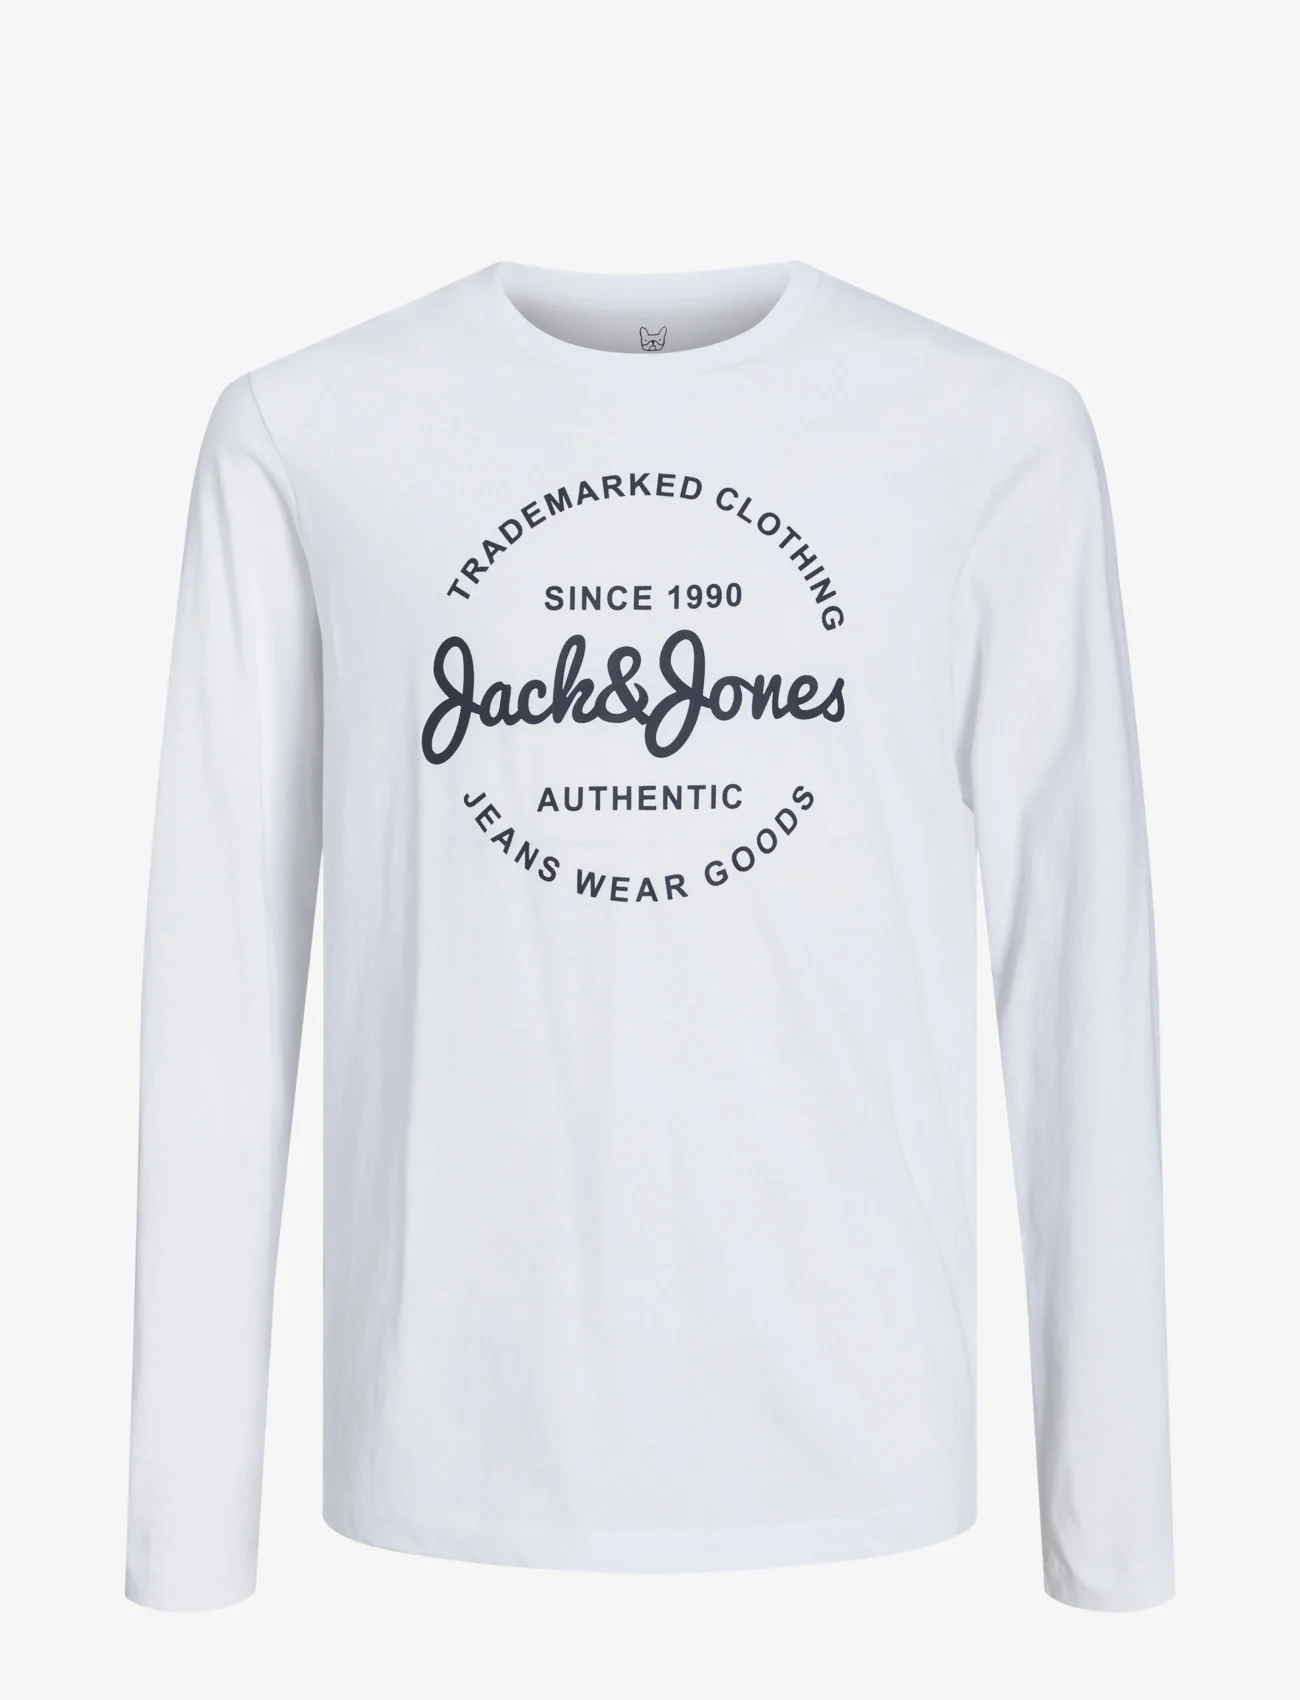 Jack & Jones - JJFOREST TEE LS CREW NECK JNR - long-sleeved t-shirts - white - 0